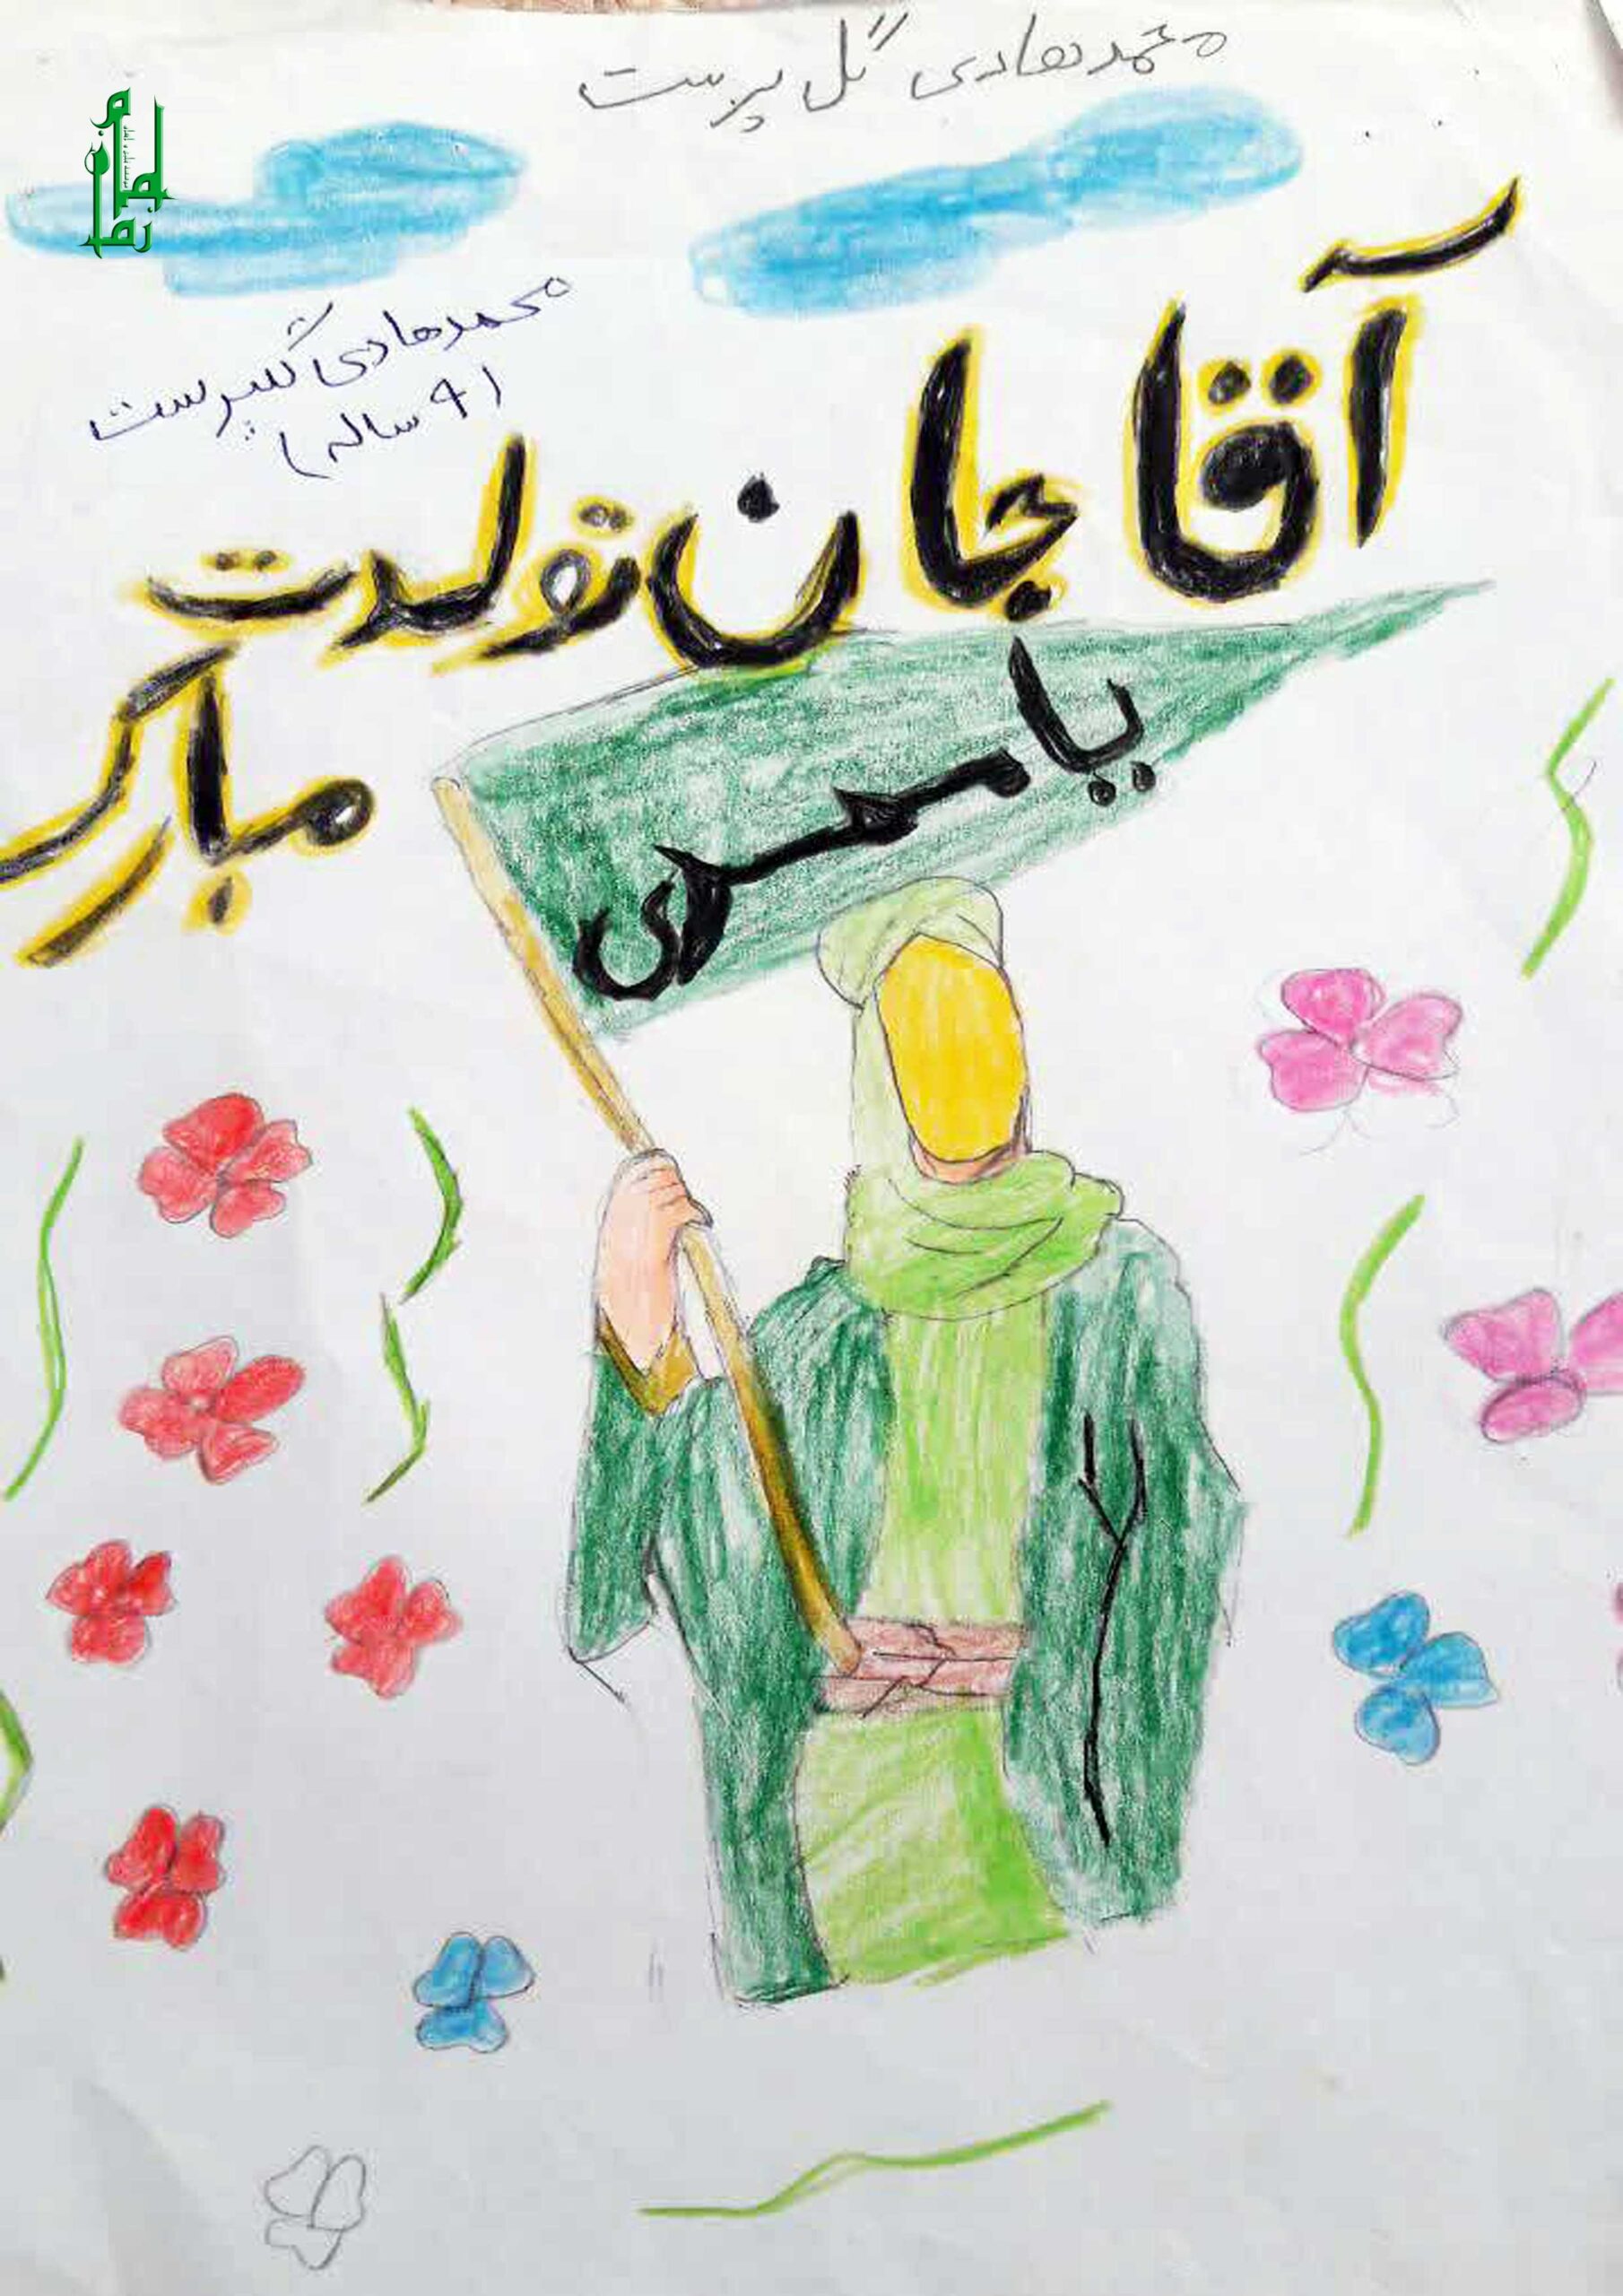 محمد هادی گلپرست نقاشی پدر اسمانی